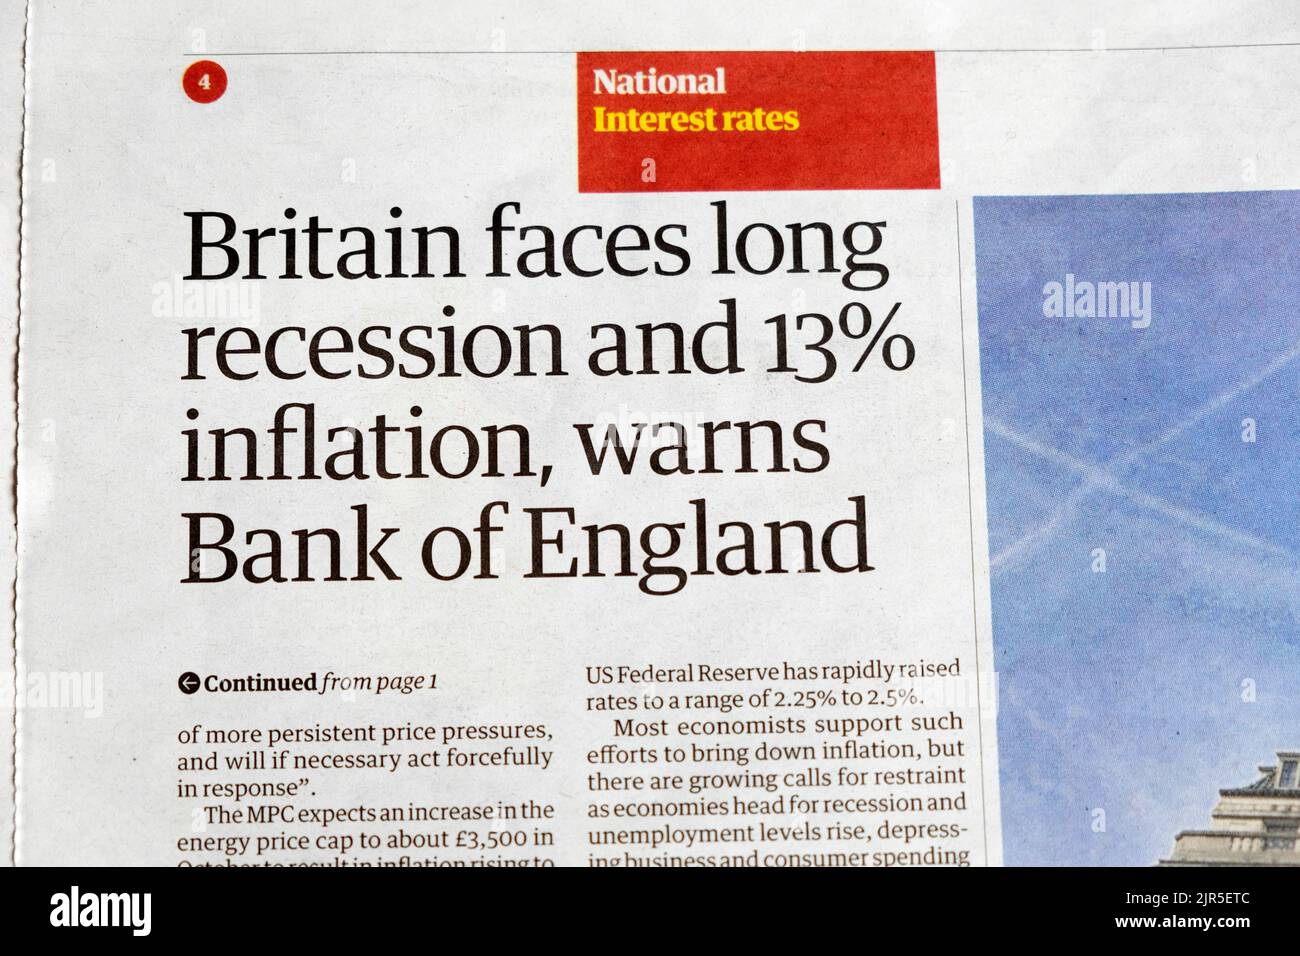 "La Gran Bretagna deve affrontare una lunga recessione e un'inflazione del 13%, avverte il quotidiano Guardian della Bank of England, articolo finanziario del 5 agosto 2022 Londra Inghilterra UK Foto Stock